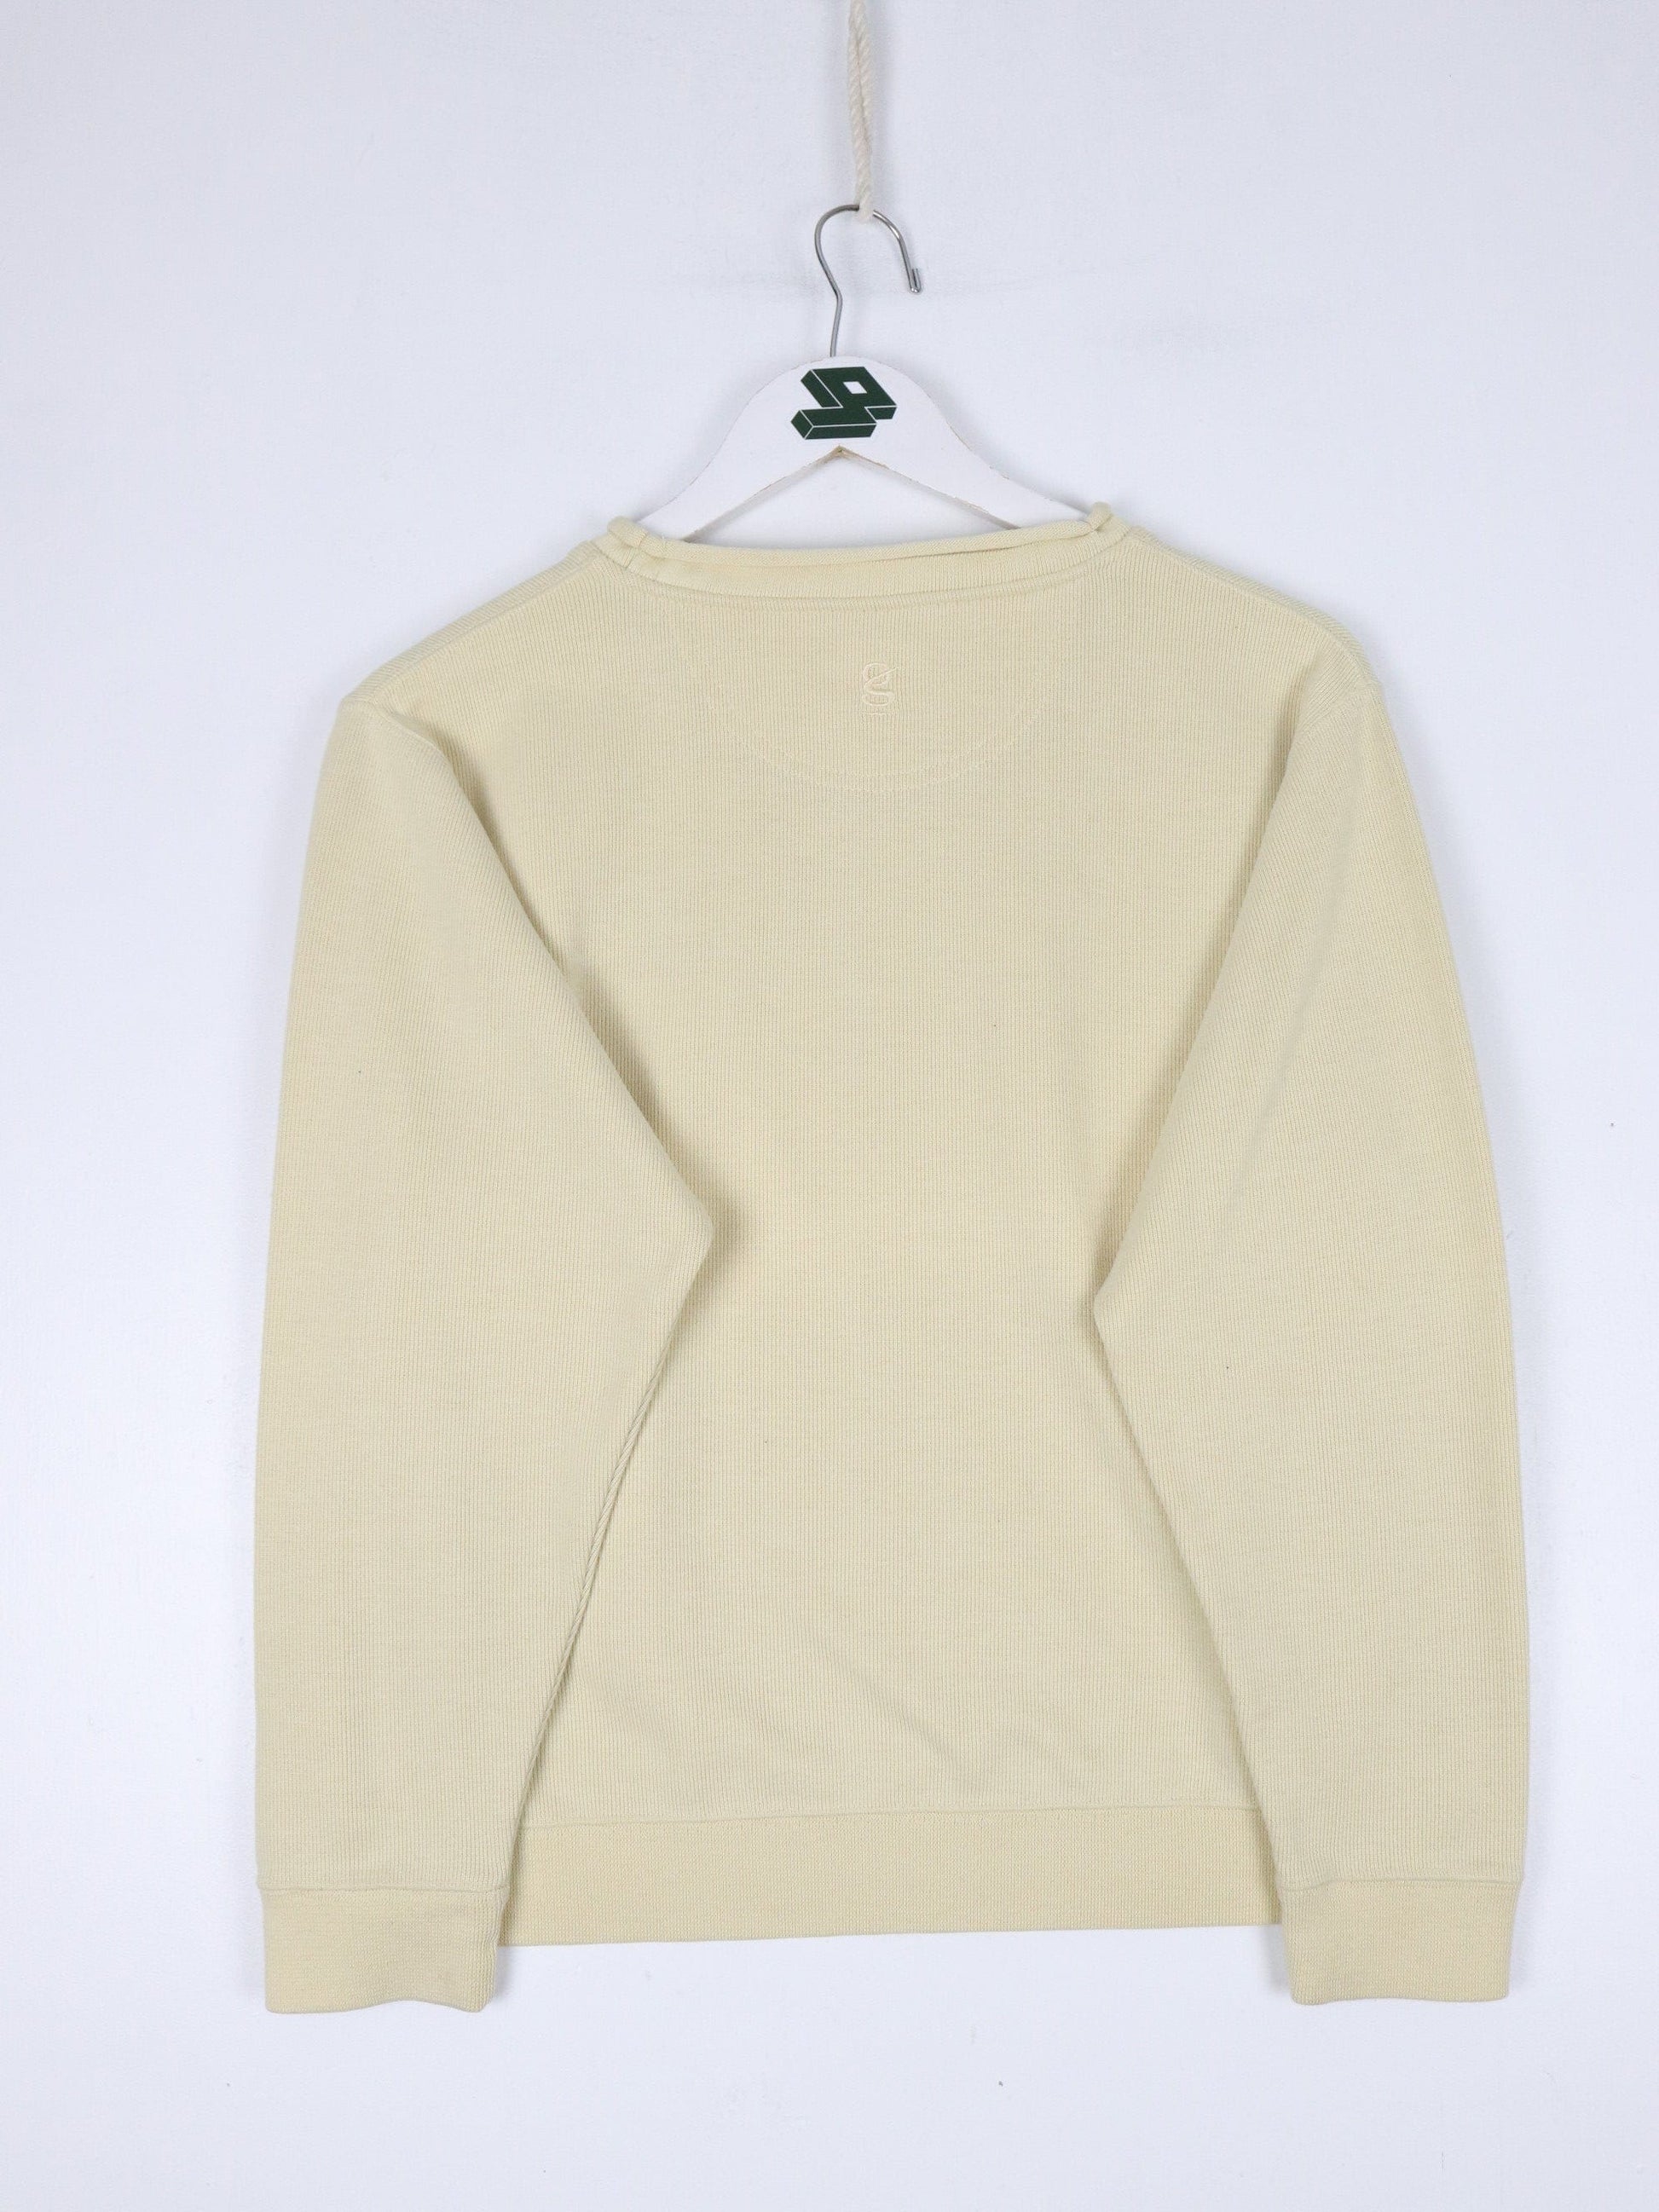 Other Sweatshirts & Hoodies Vintage Cleveland Yachting Club Sweatshirt Women's Small Yellow